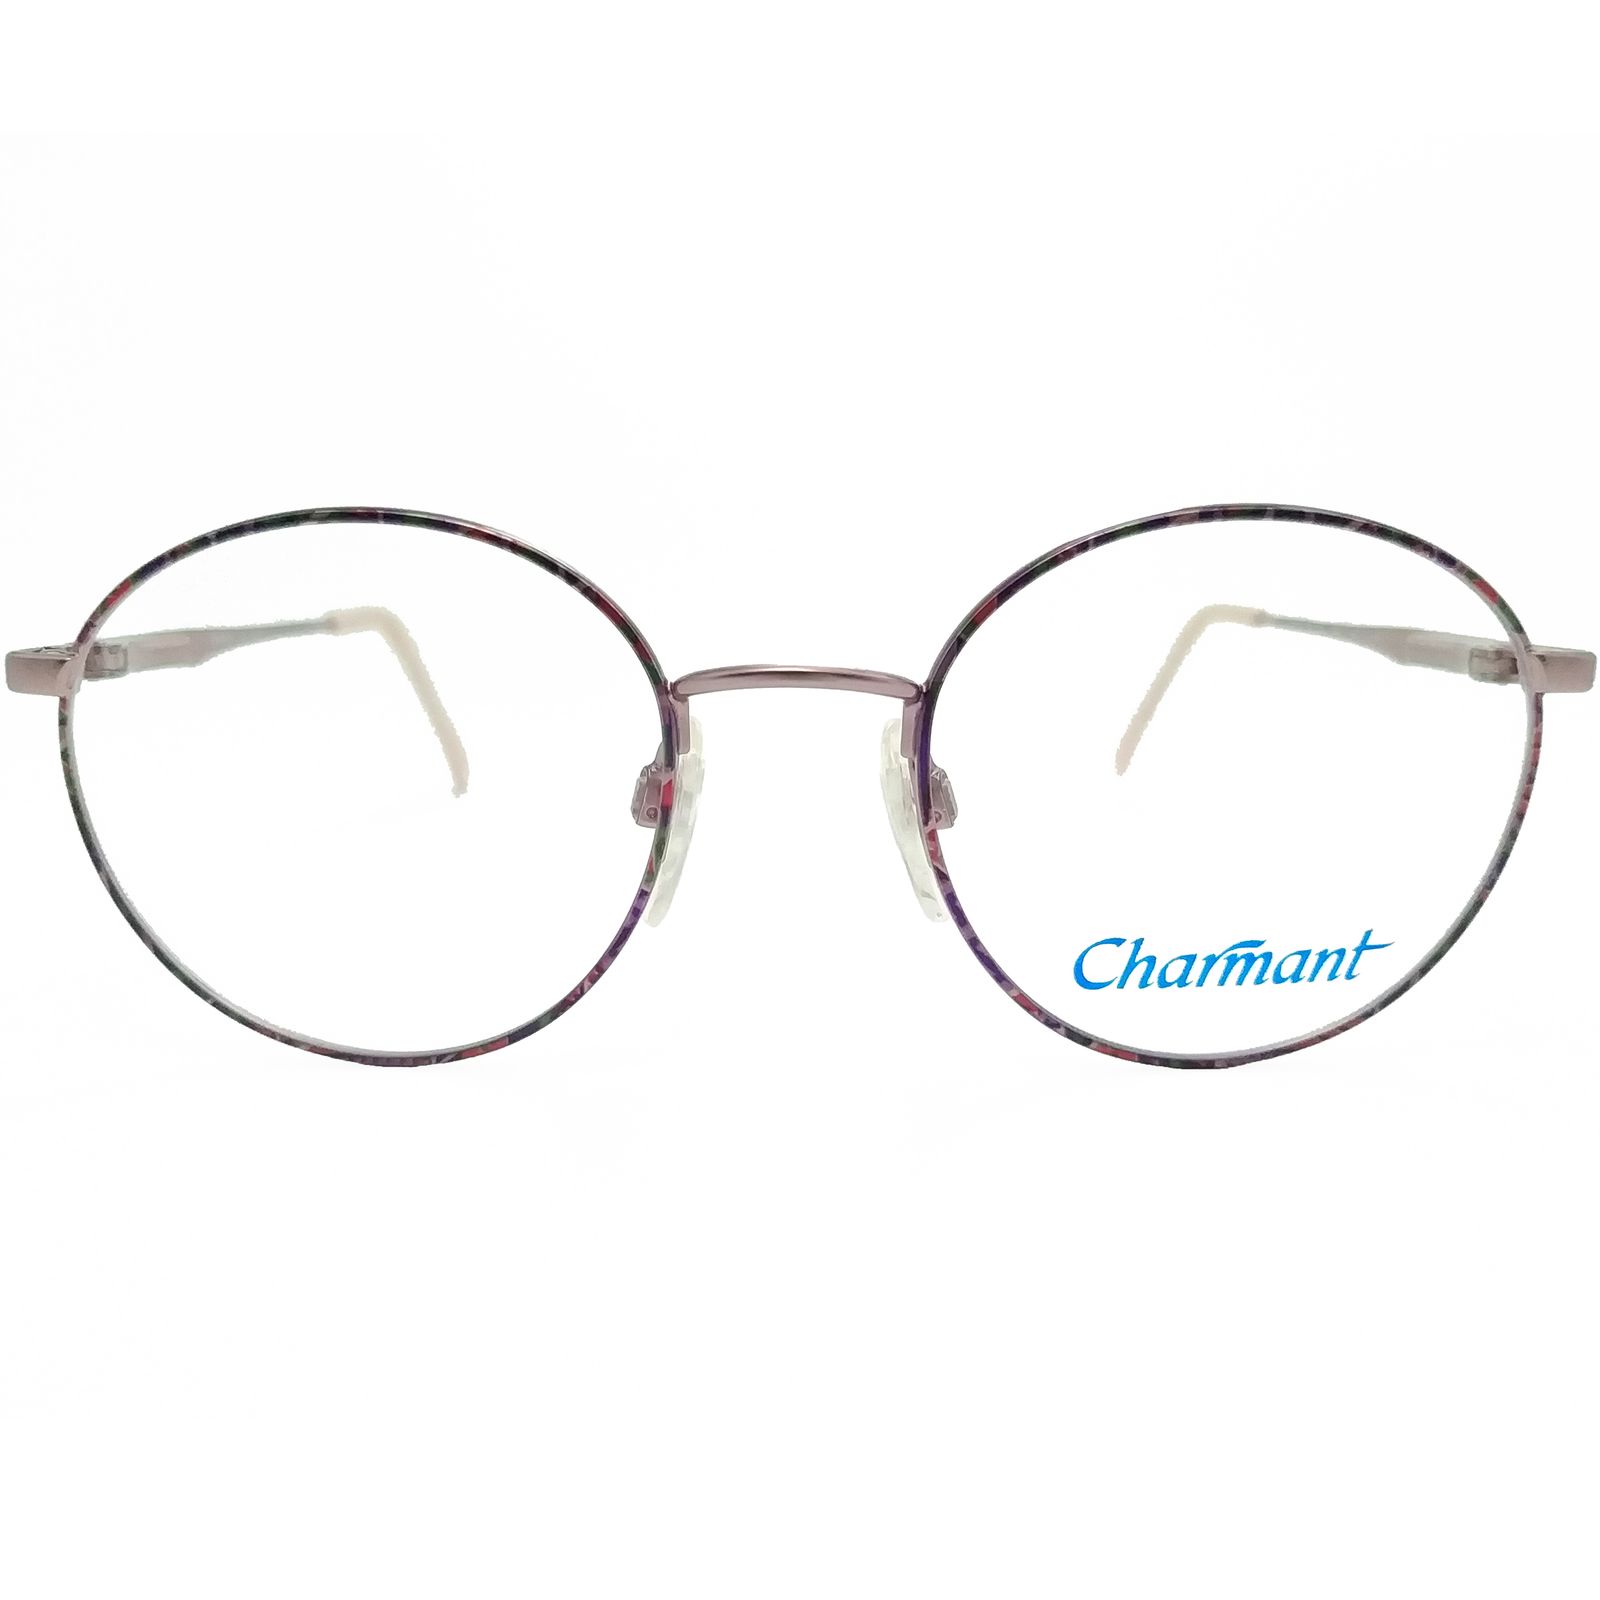 فریم عینک طبی زنانه چارمنت مدل 4250 -  - 1